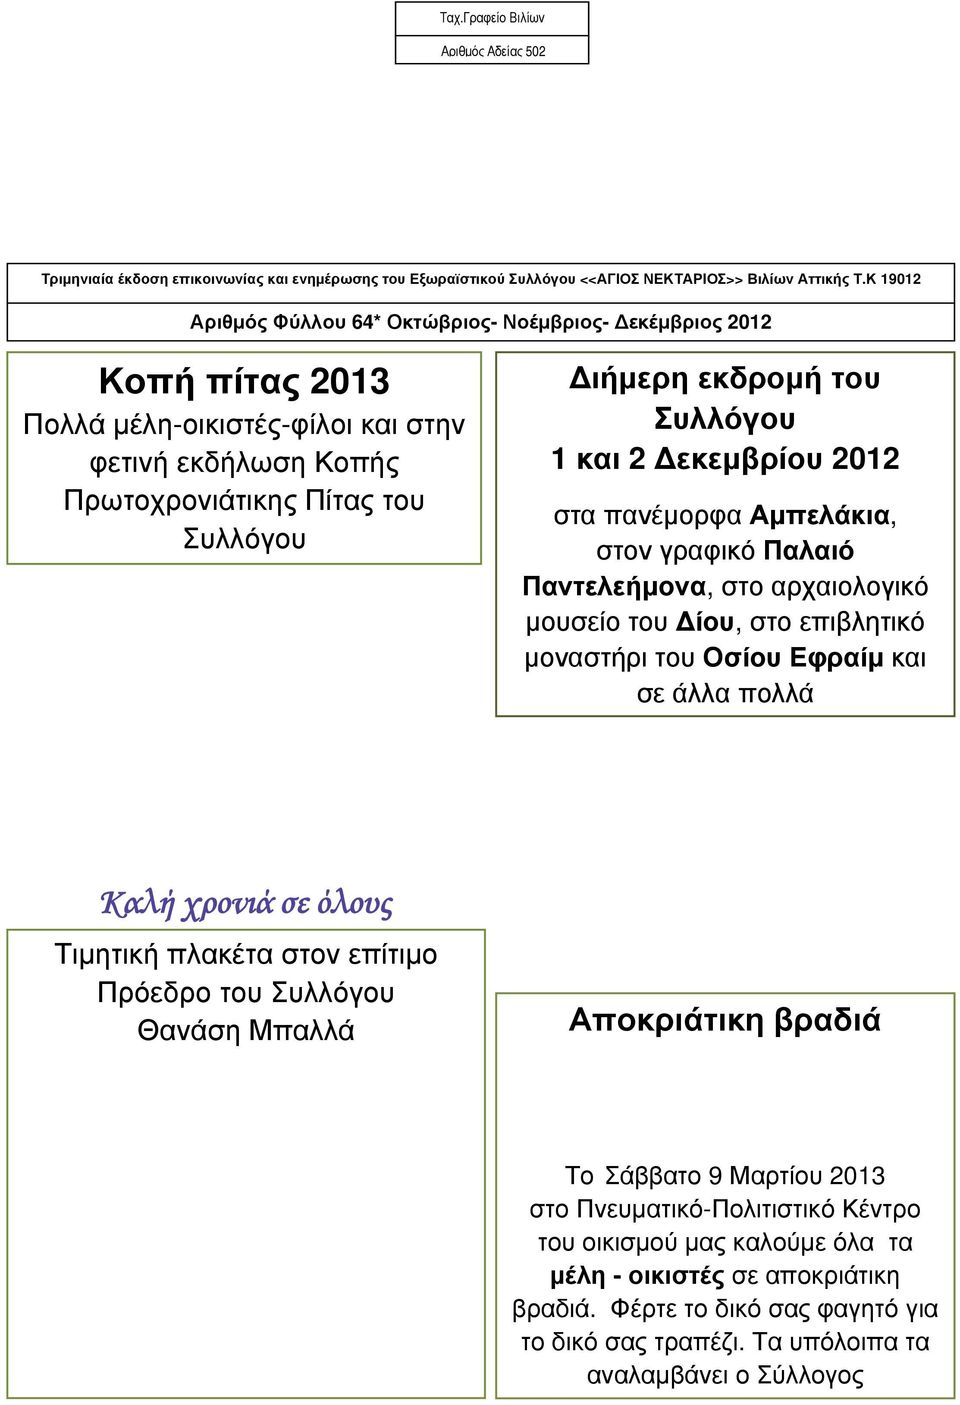 Συλλόγου 1 και 2 Δεκεμβρίου 2012 στα πανέμορφα Αμπελάκια, στον γραφικό Παλαιό Παντελεήμονα, στο αρχαιολογικό μουσείο του Δίου, στο επιβλητικό μοναστήρι του Οσίου Εφραίμ και σε άλλα πολλά Καλή χρονιά